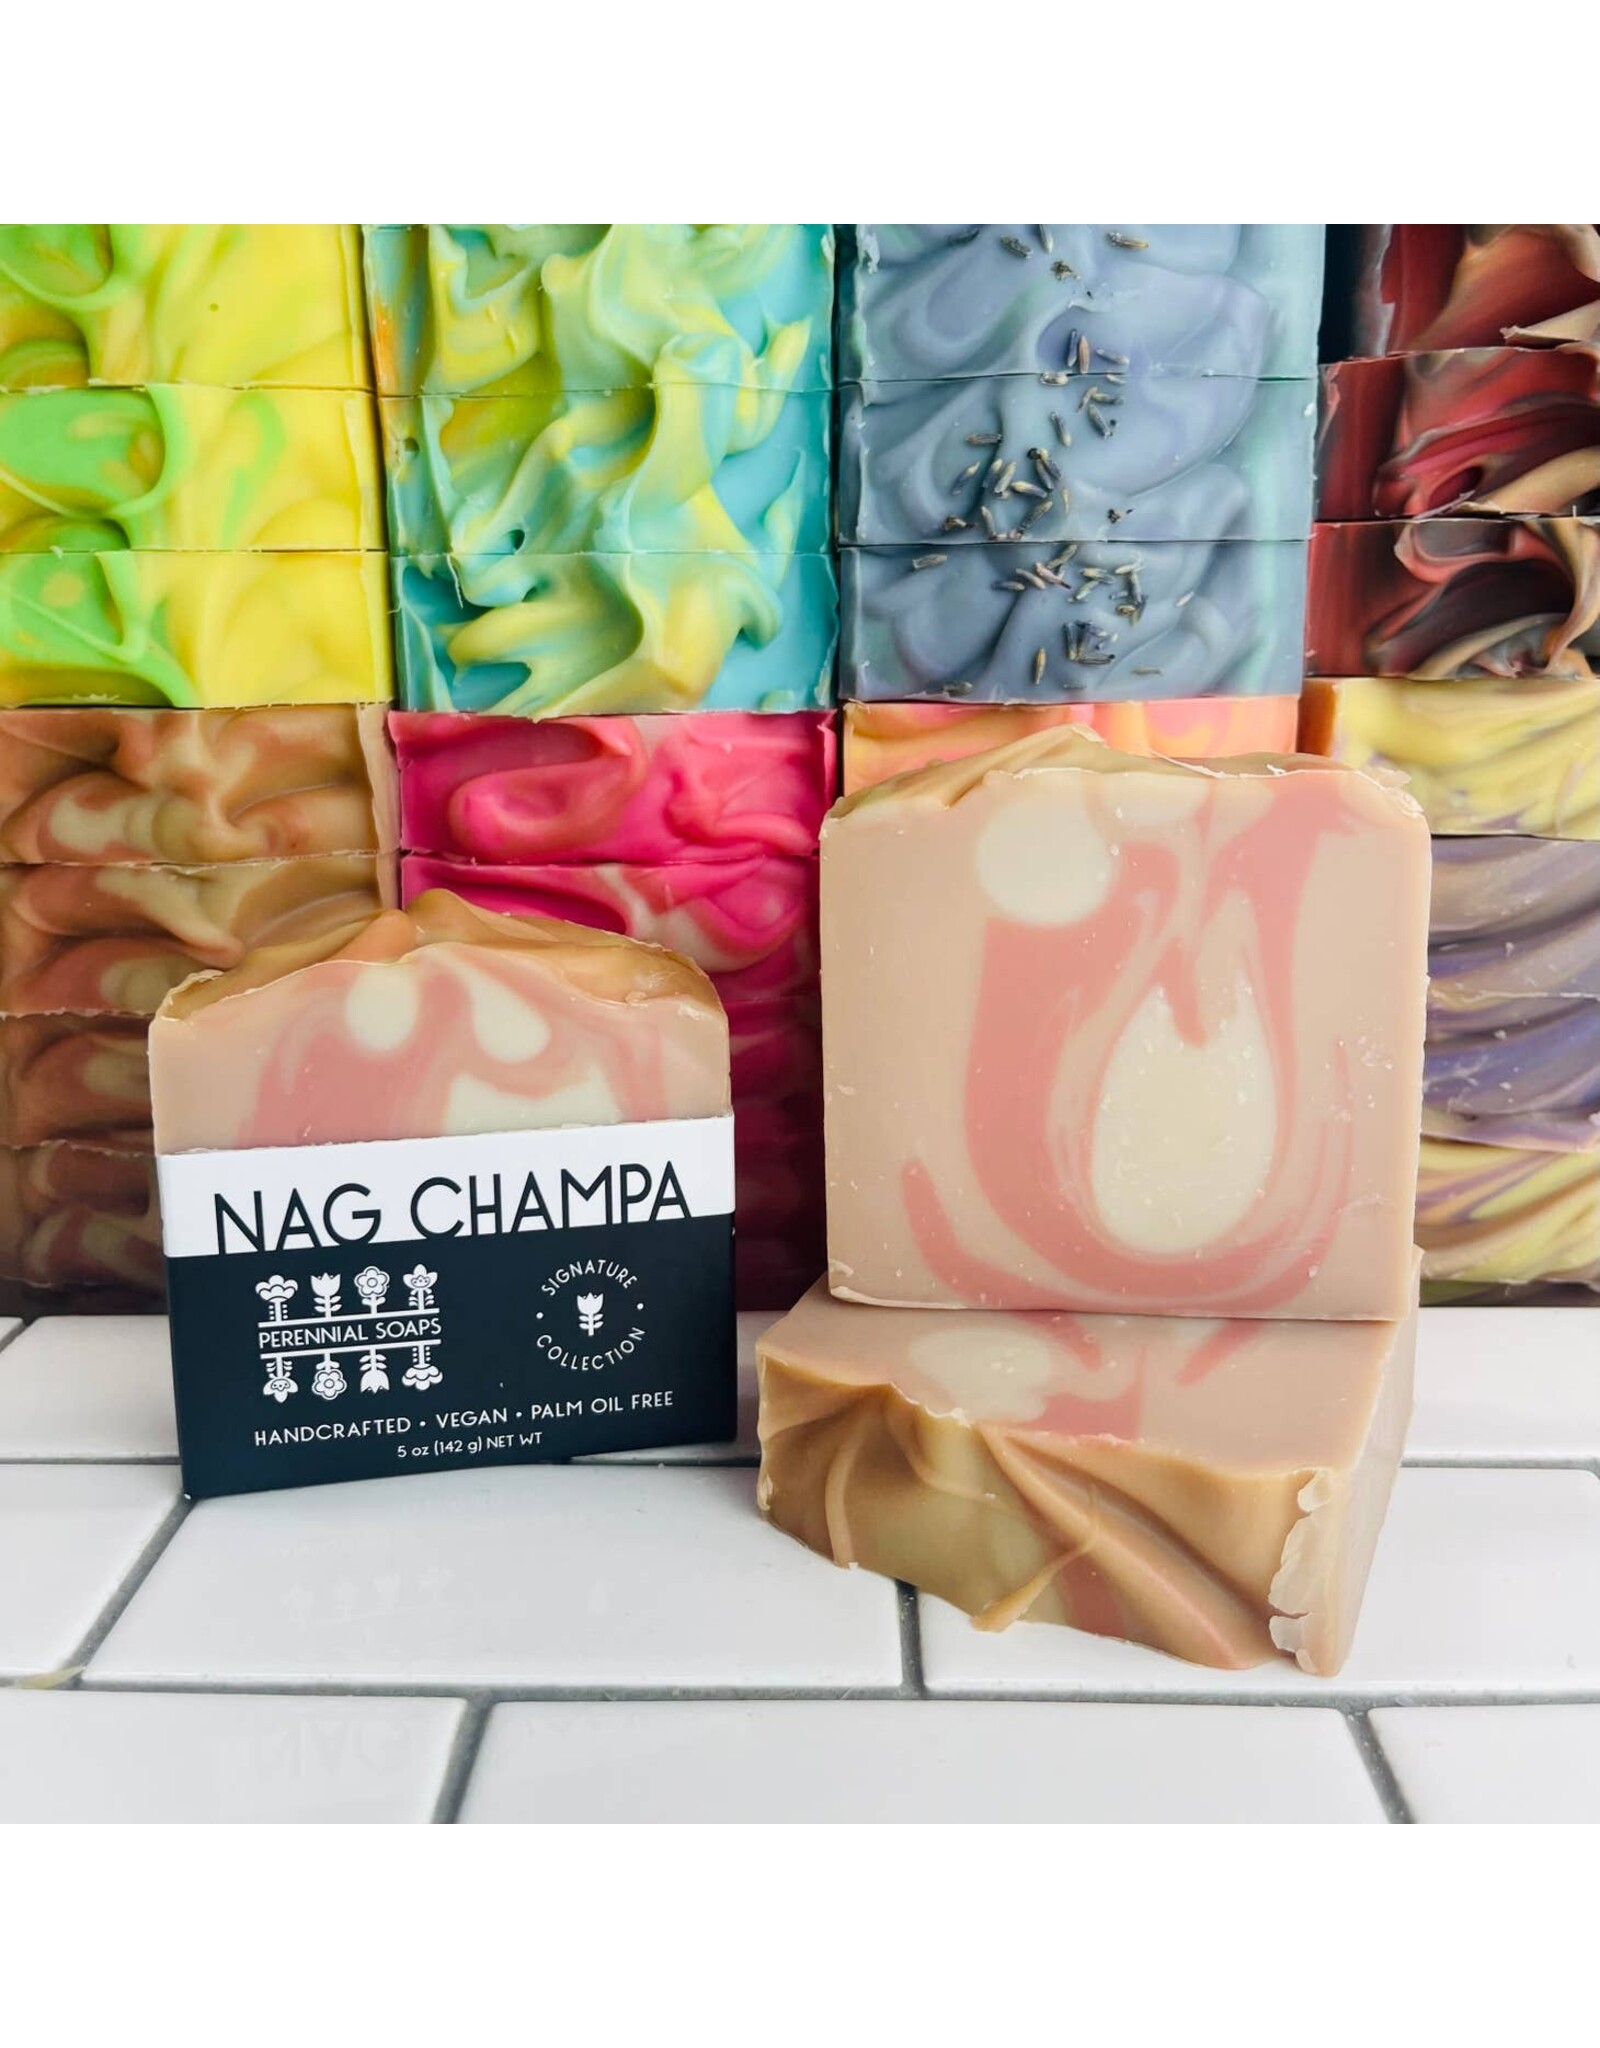 Perennial Soaps Nag Champa Bar Soap